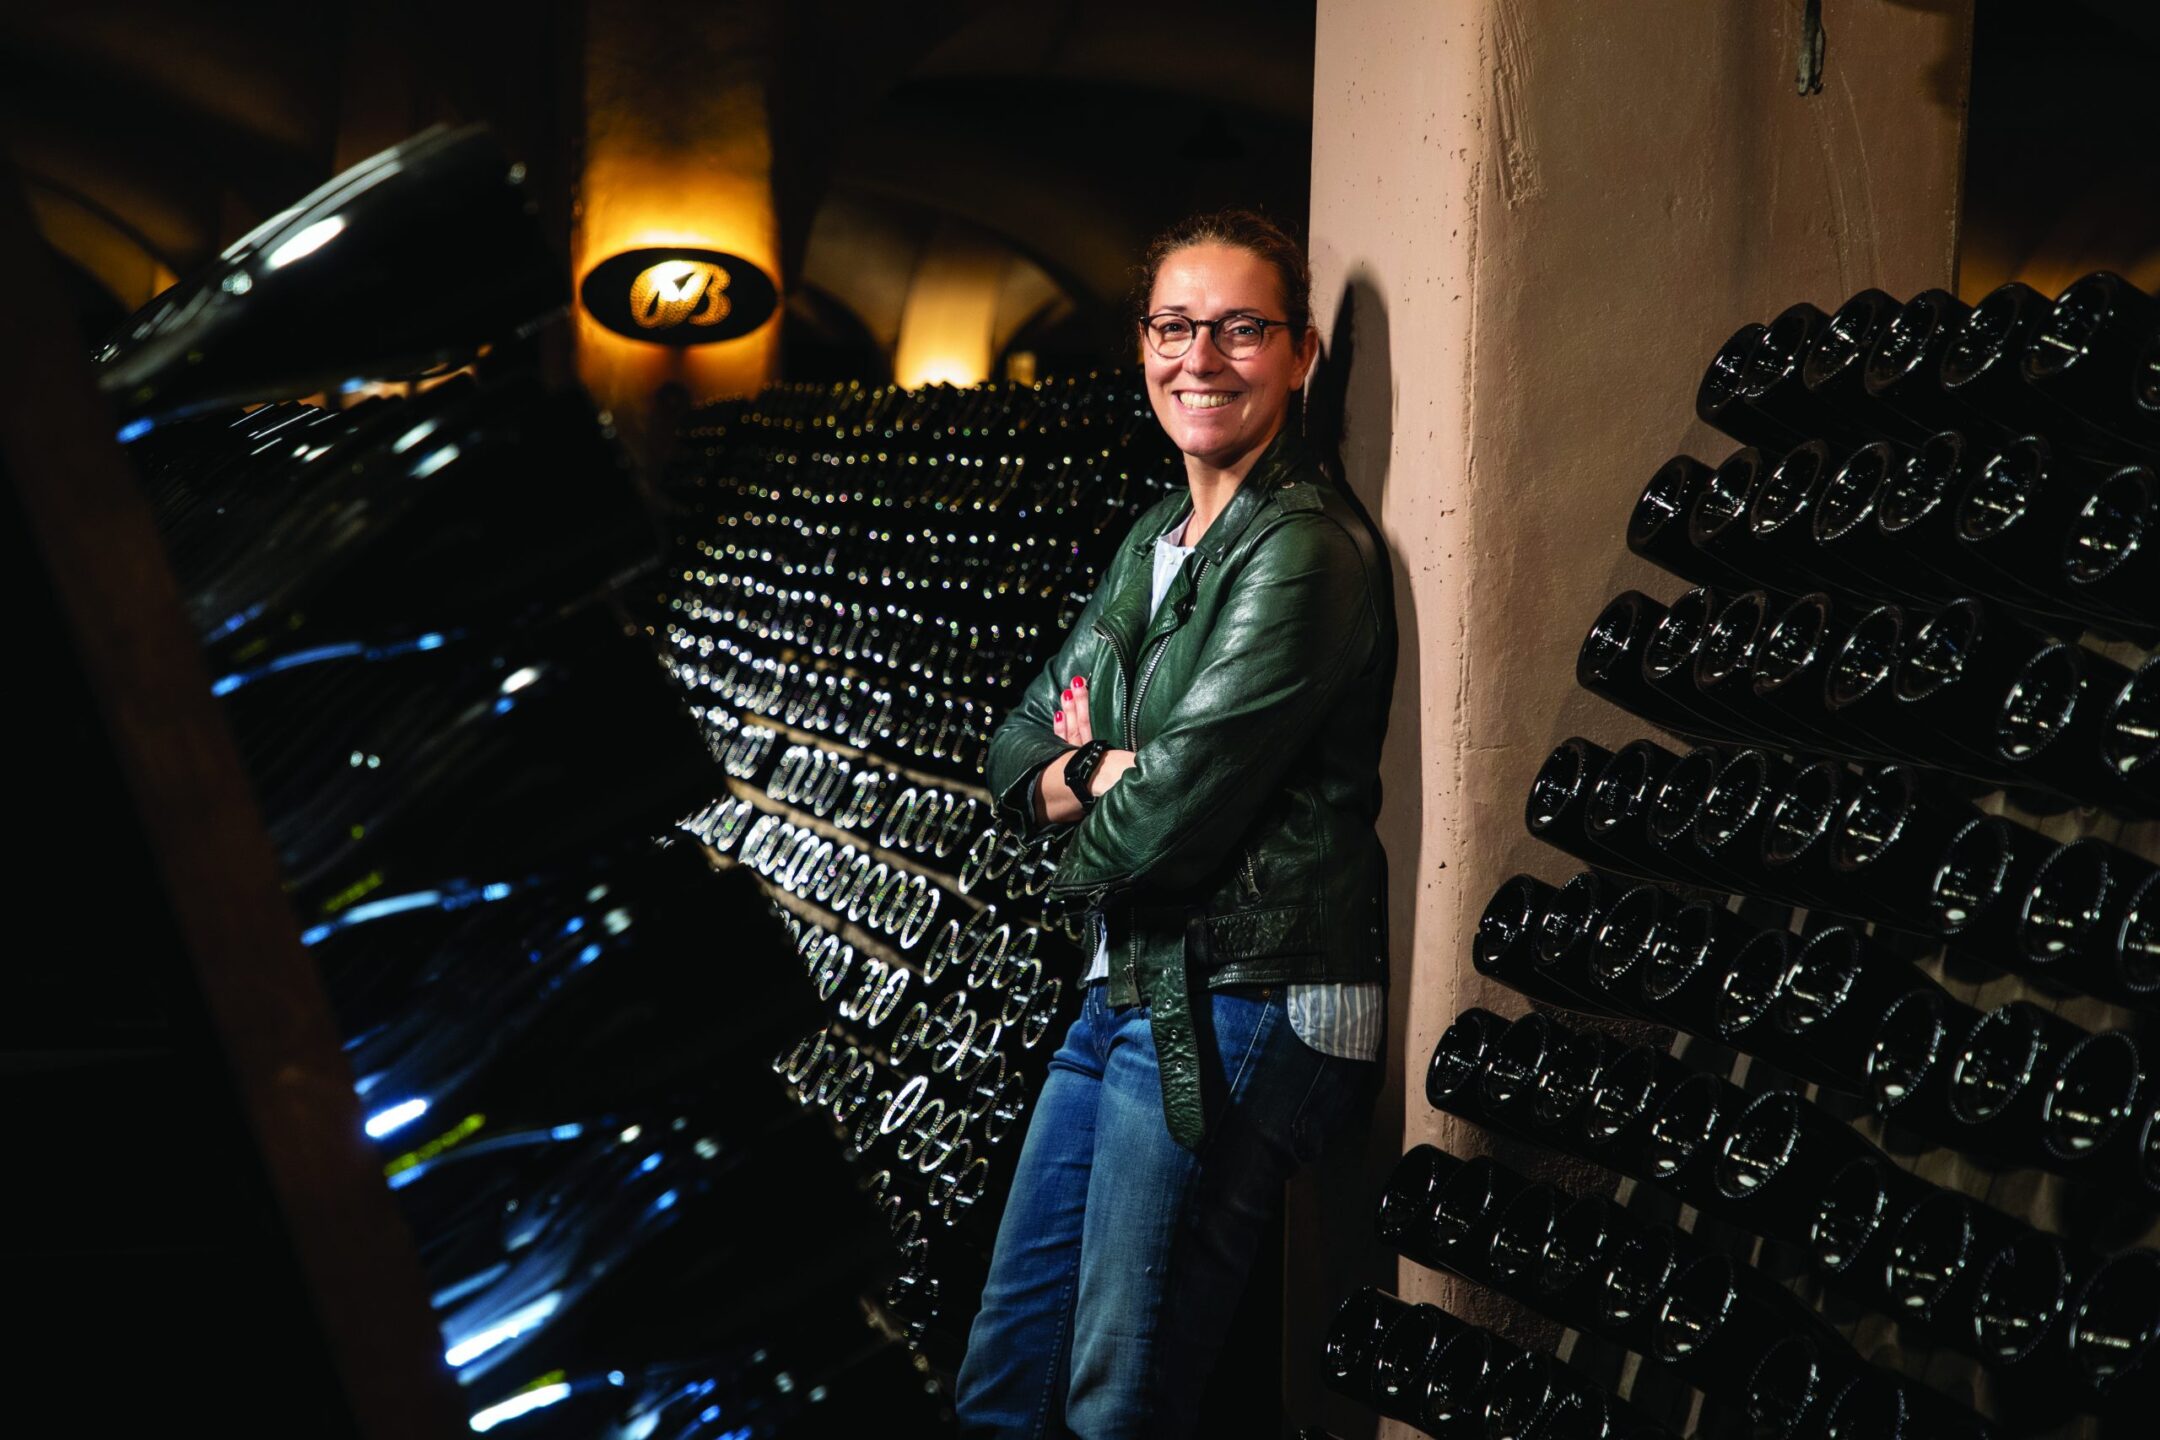 Migliori vini italiani: Bellavista tra le 100 Eccellenze Italiane per Forbes